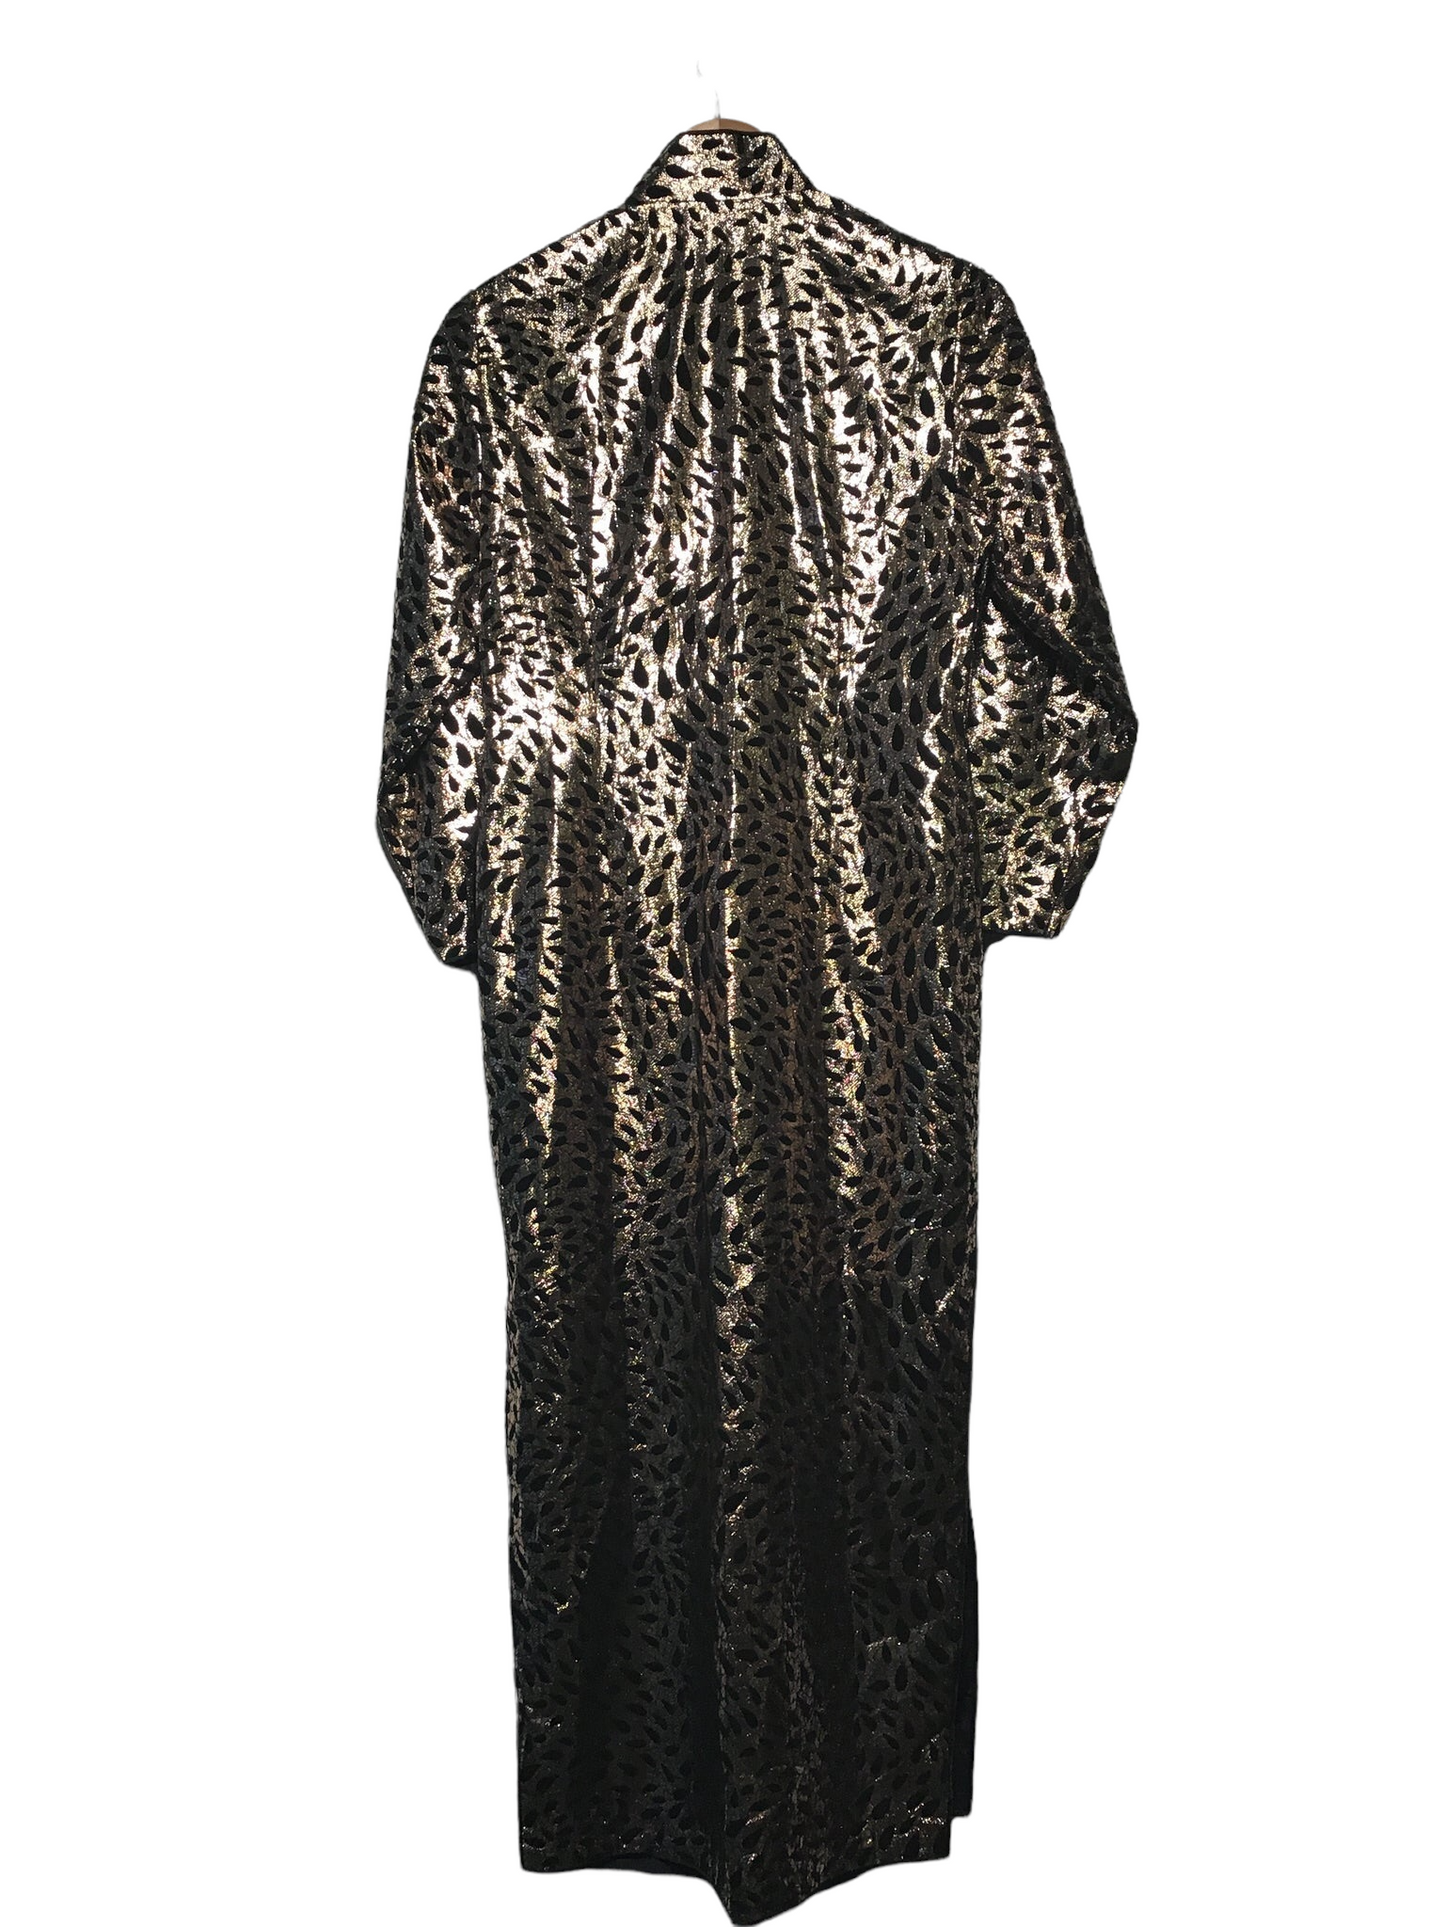 Metallic Evening Dress (Size L)